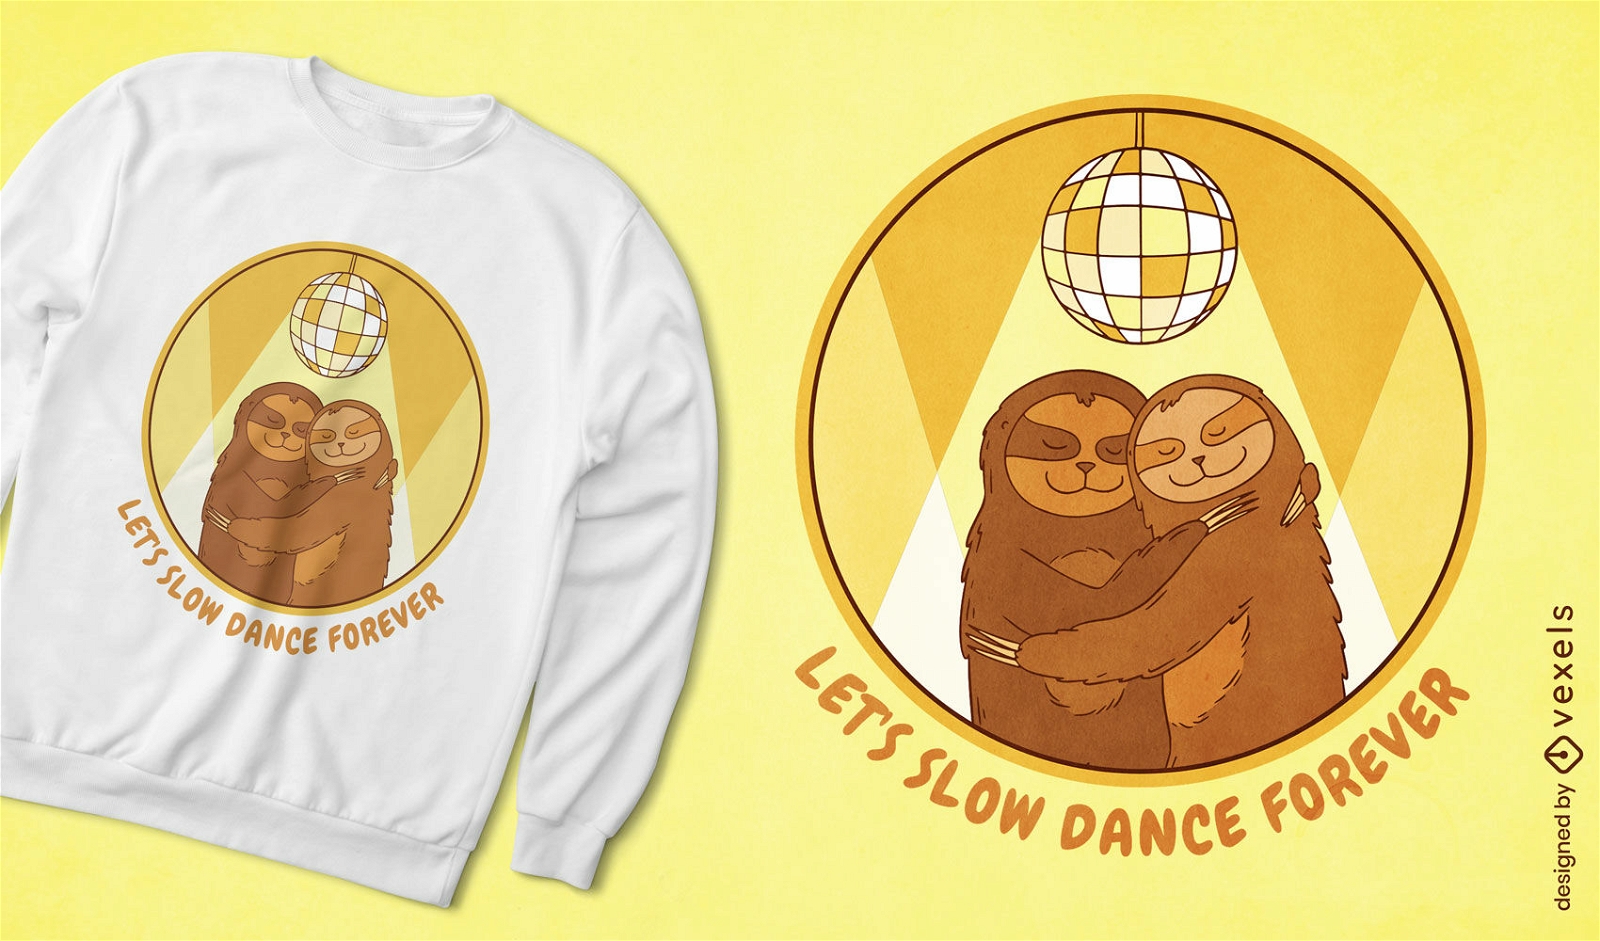 Slow dance sloths t-shirt design